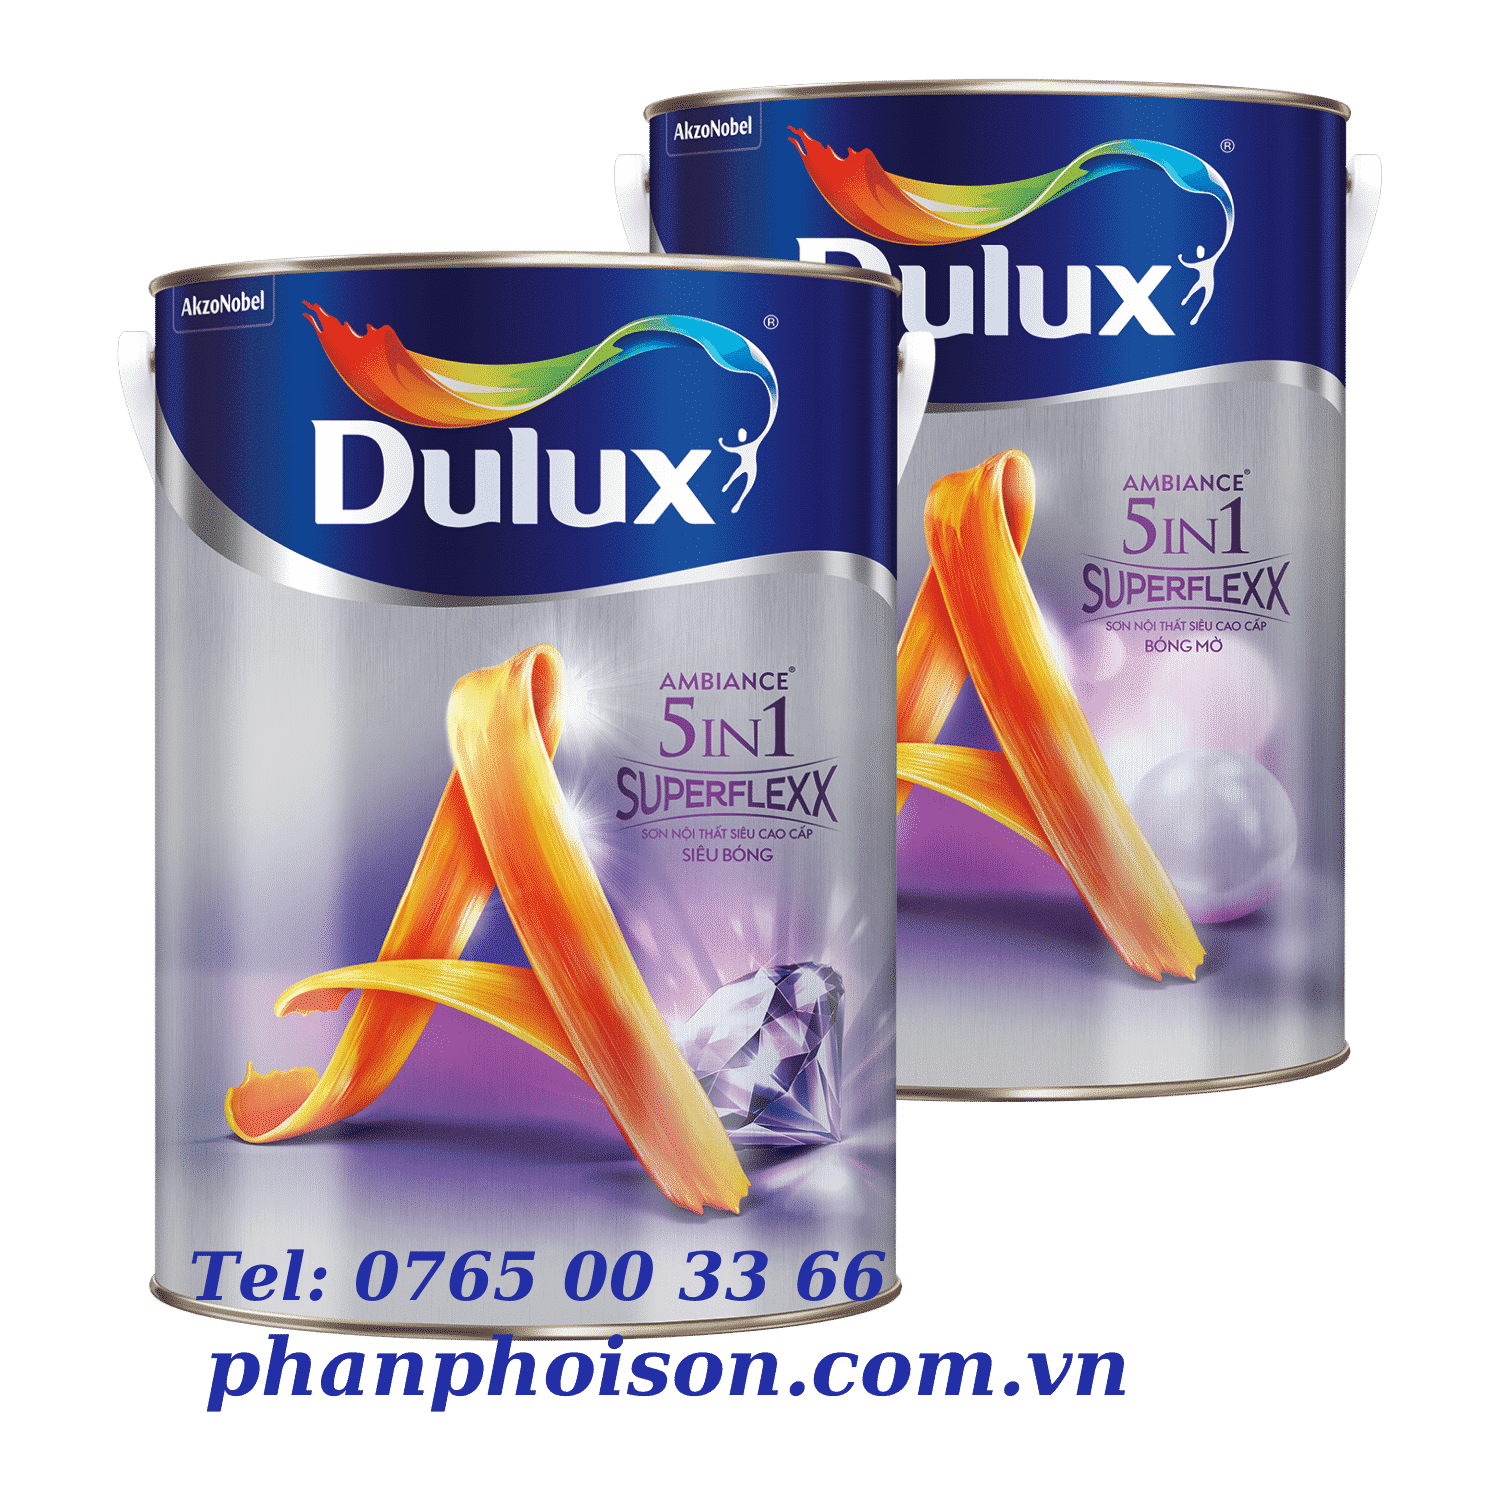 Dulux Ambiance 5 trong 1 SuperFlexx